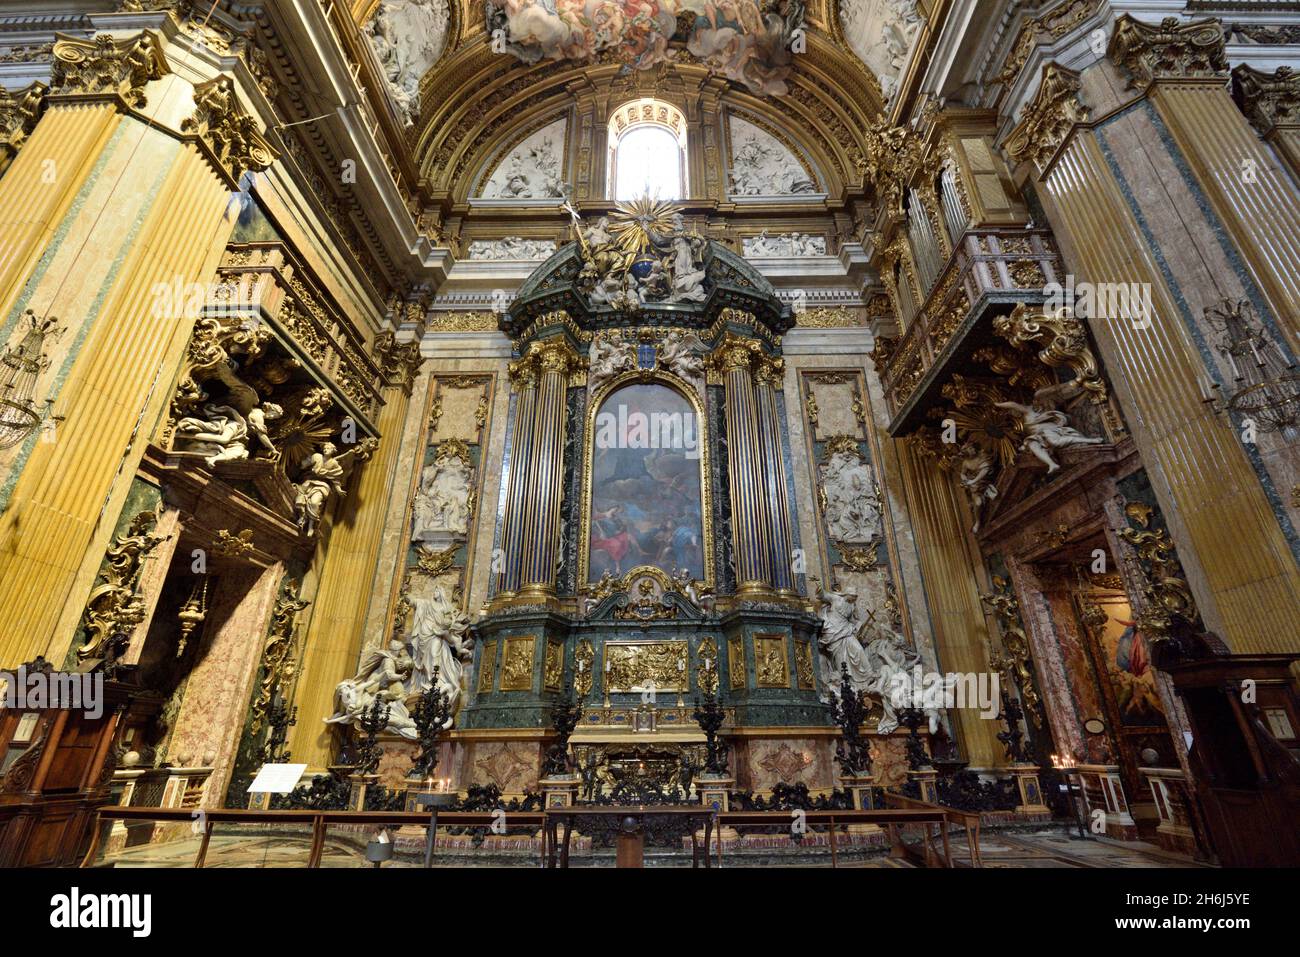 Italie, Rome, Chiesa del Gesù (église de Jésus) intérieur, l'autel de Saint Ignace et la machine baroque Banque D'Images